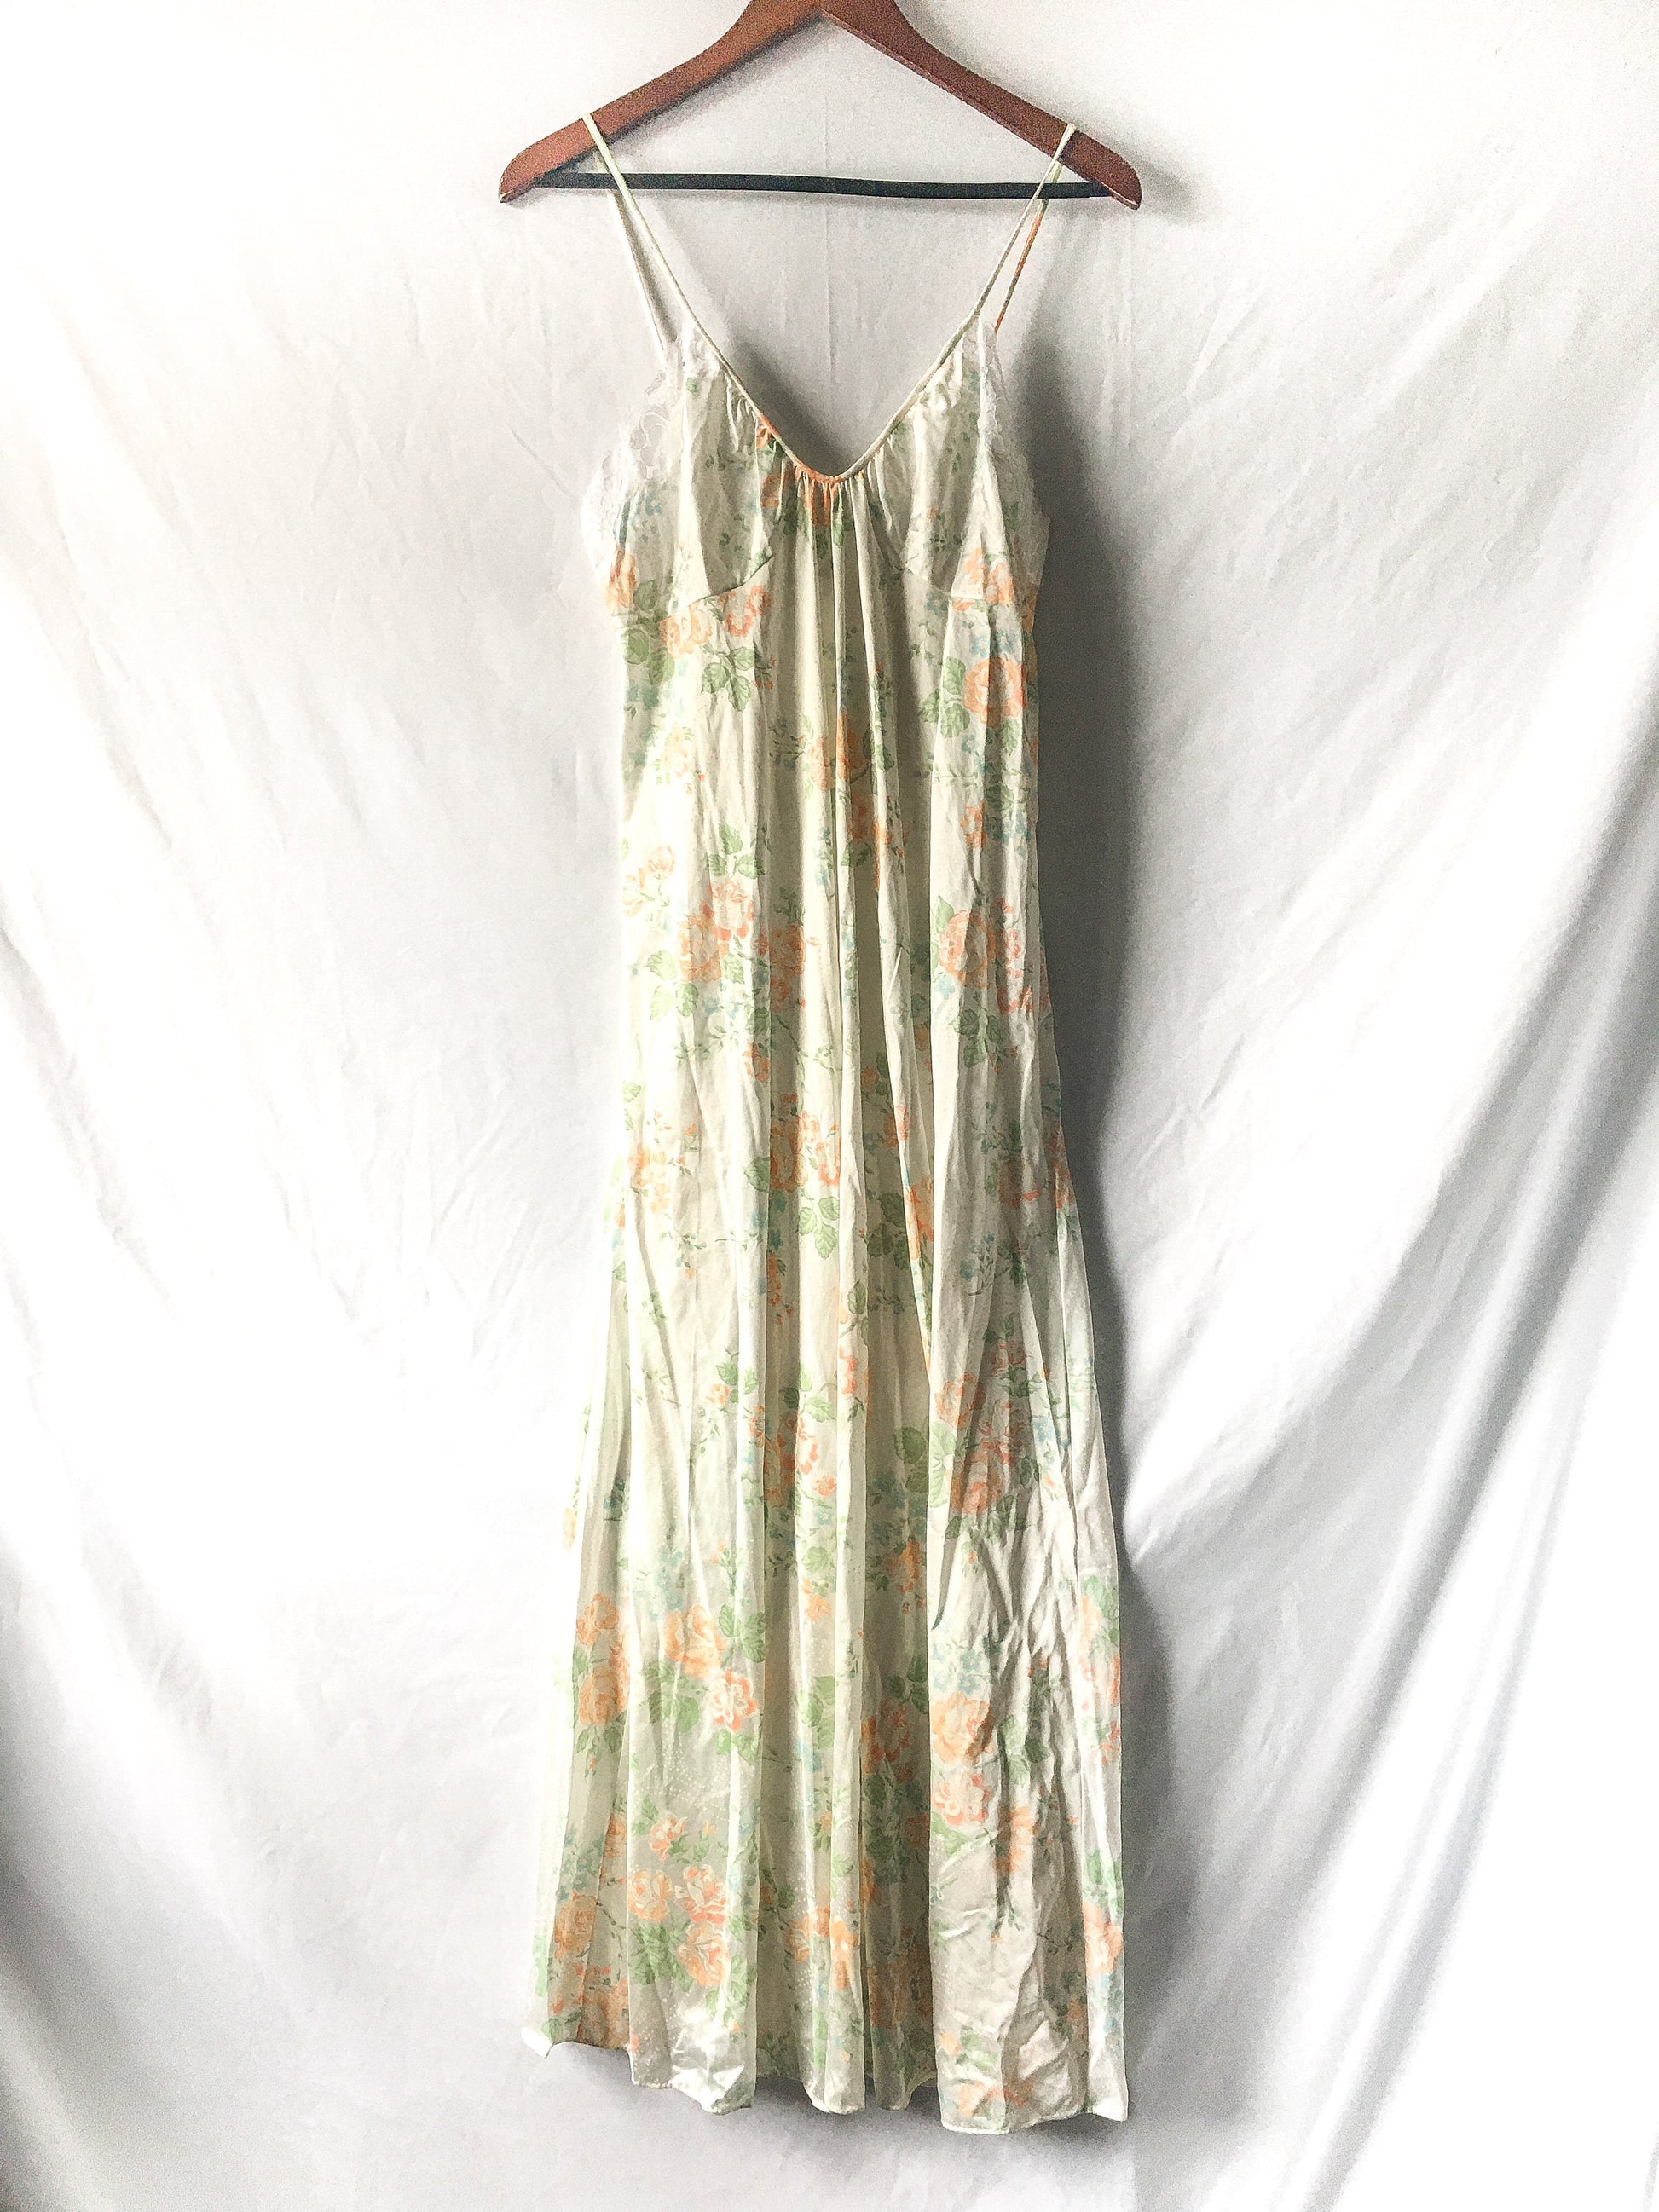 Vintage Gossard Cream/Off-White Floral Slip Dress with Lace Detail, Sz. L, Vintage Peignoir Dress